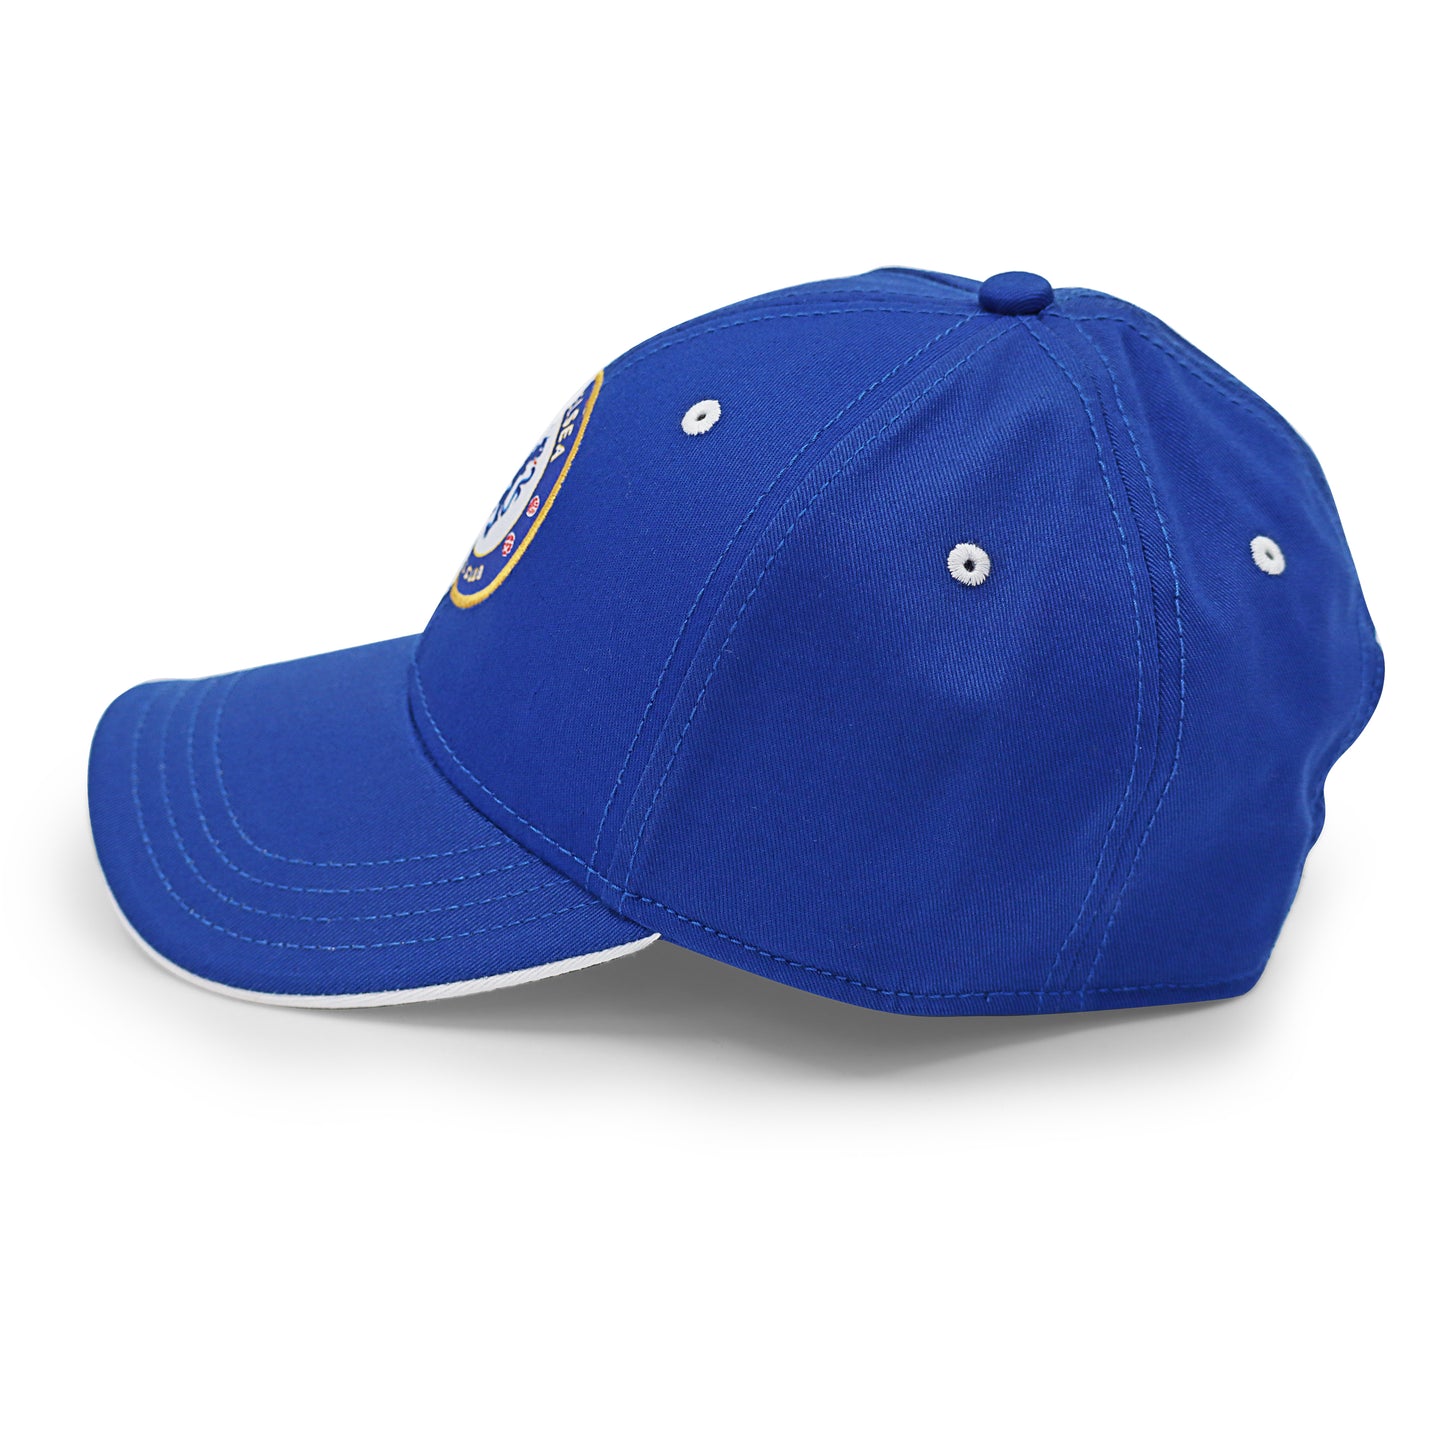 Chelsea F.C. blue cap